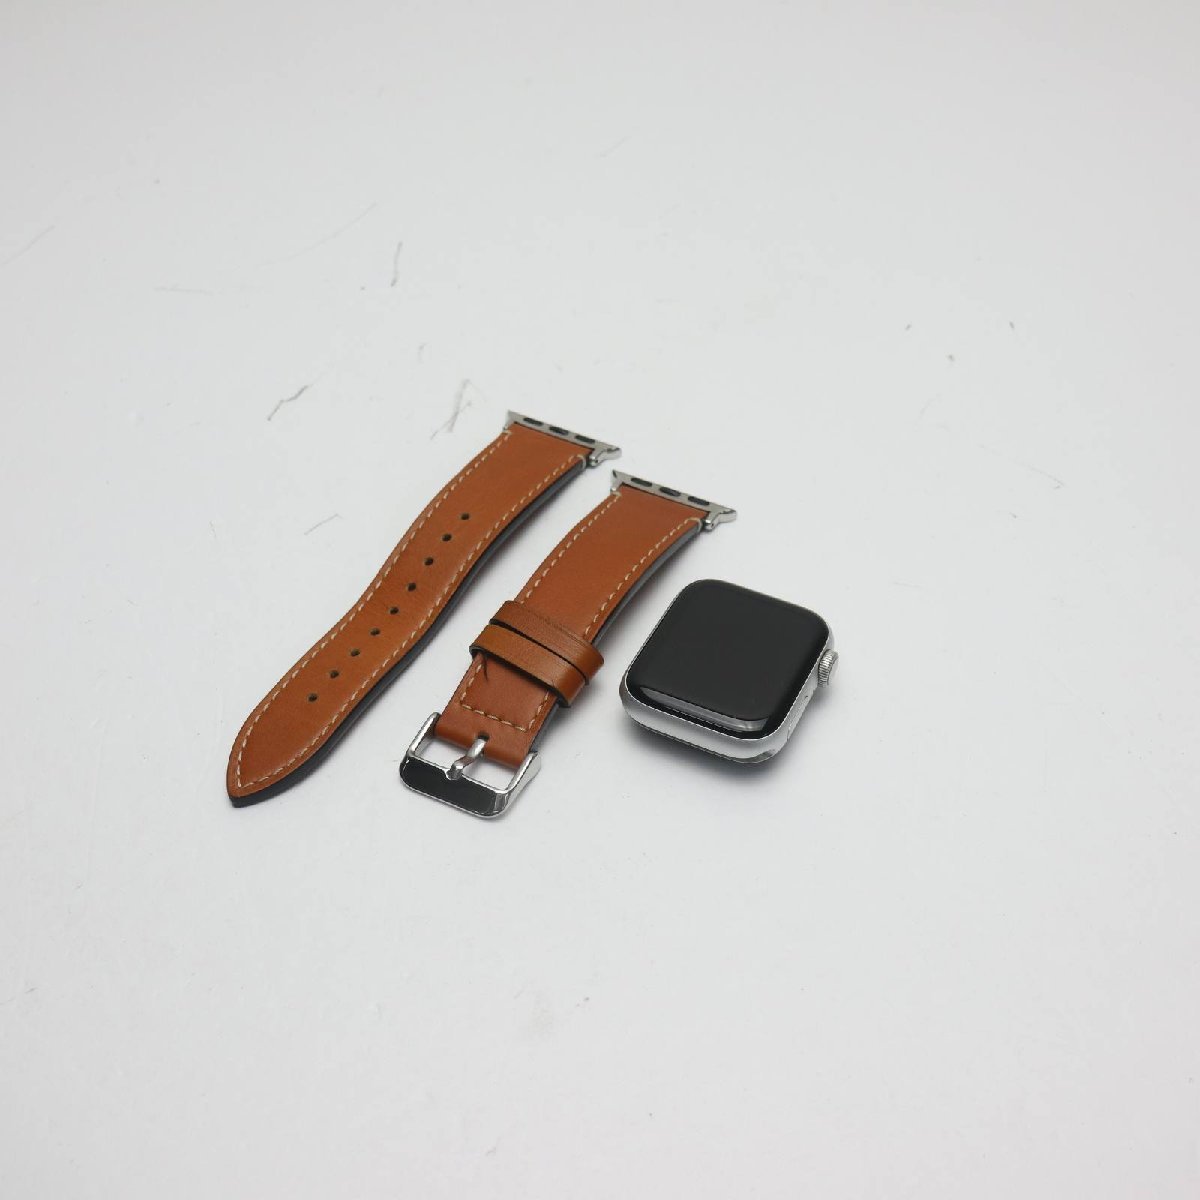  прекрасный товар Apple Watch SE 40mm GPS+Cellular серебряный отправка в тот же день Watch Apple.... суббота, воскресенье и праздничные дни отправка OK